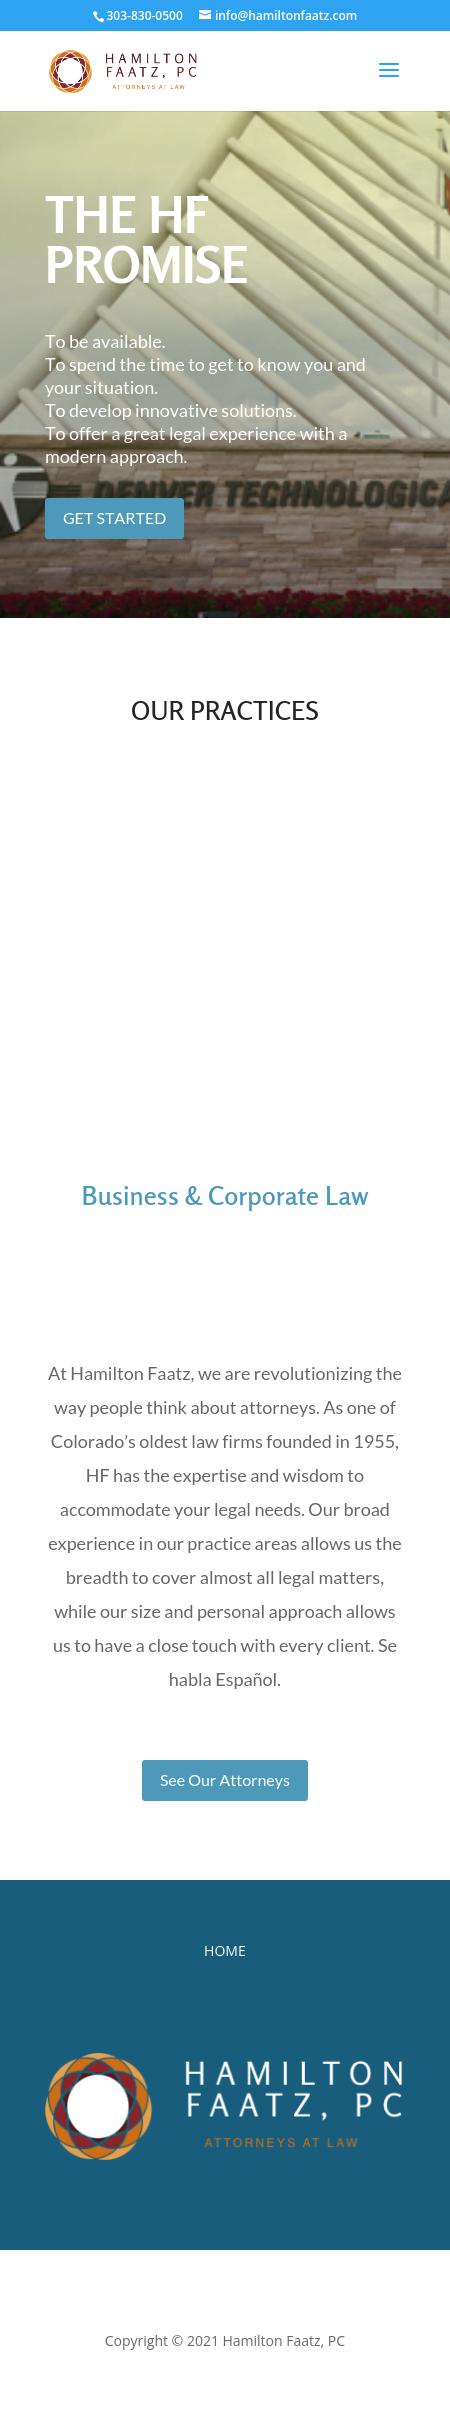 Hamilton Faatz, PC - Louisville CO Lawyers